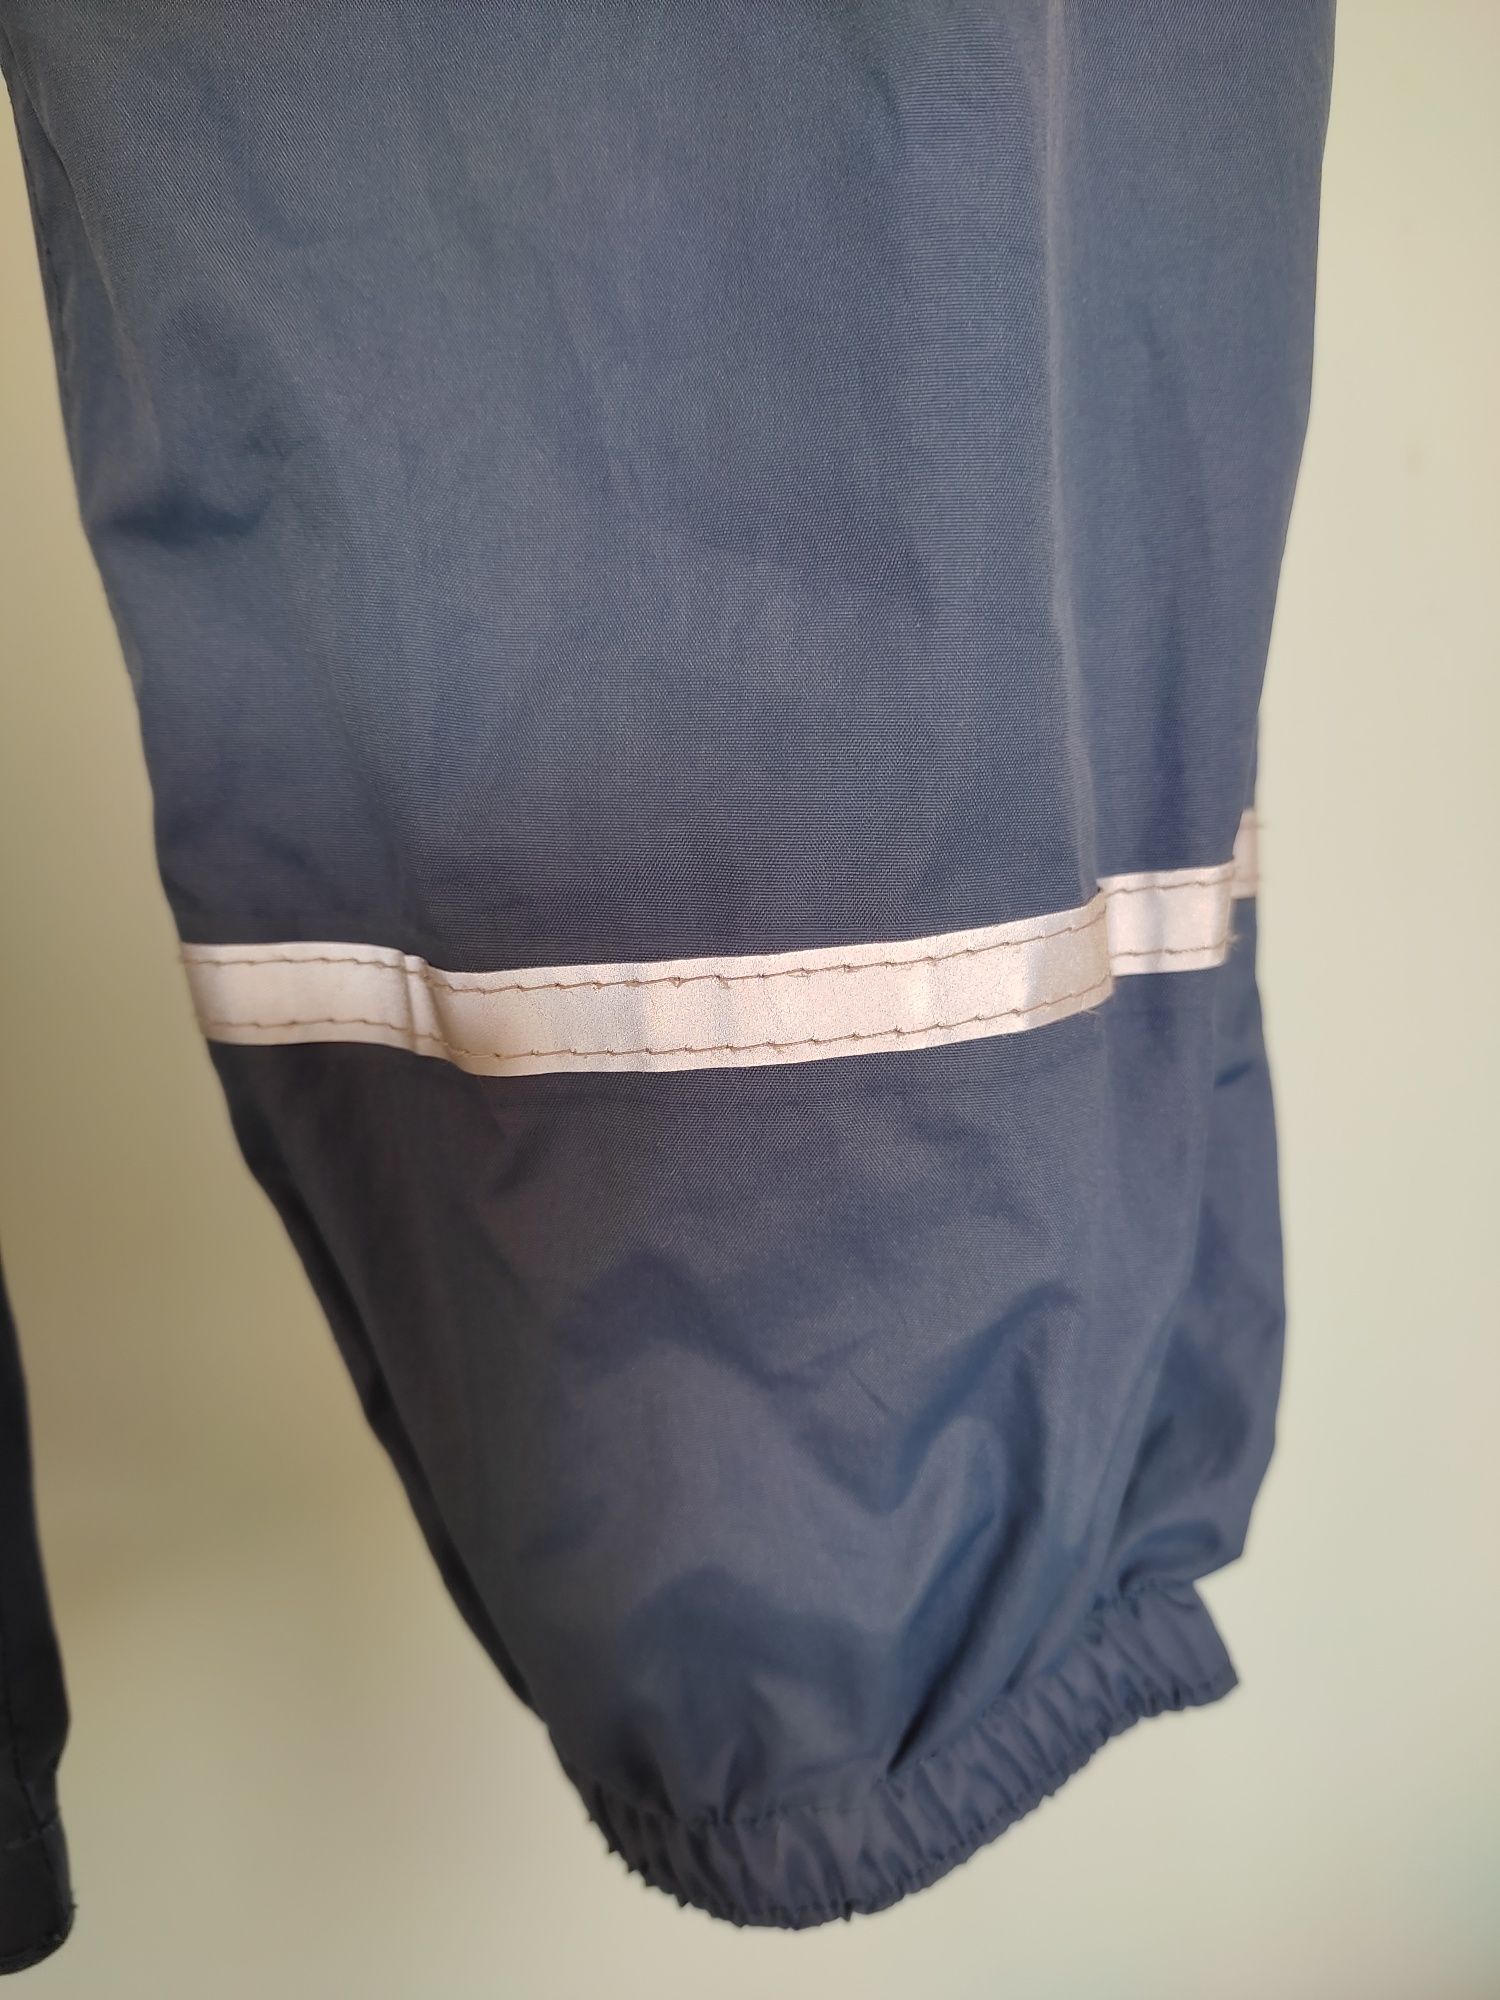 Spodnie przeciwdeszczowe Bornino 98/104 na 3-4 lata wodoodporne